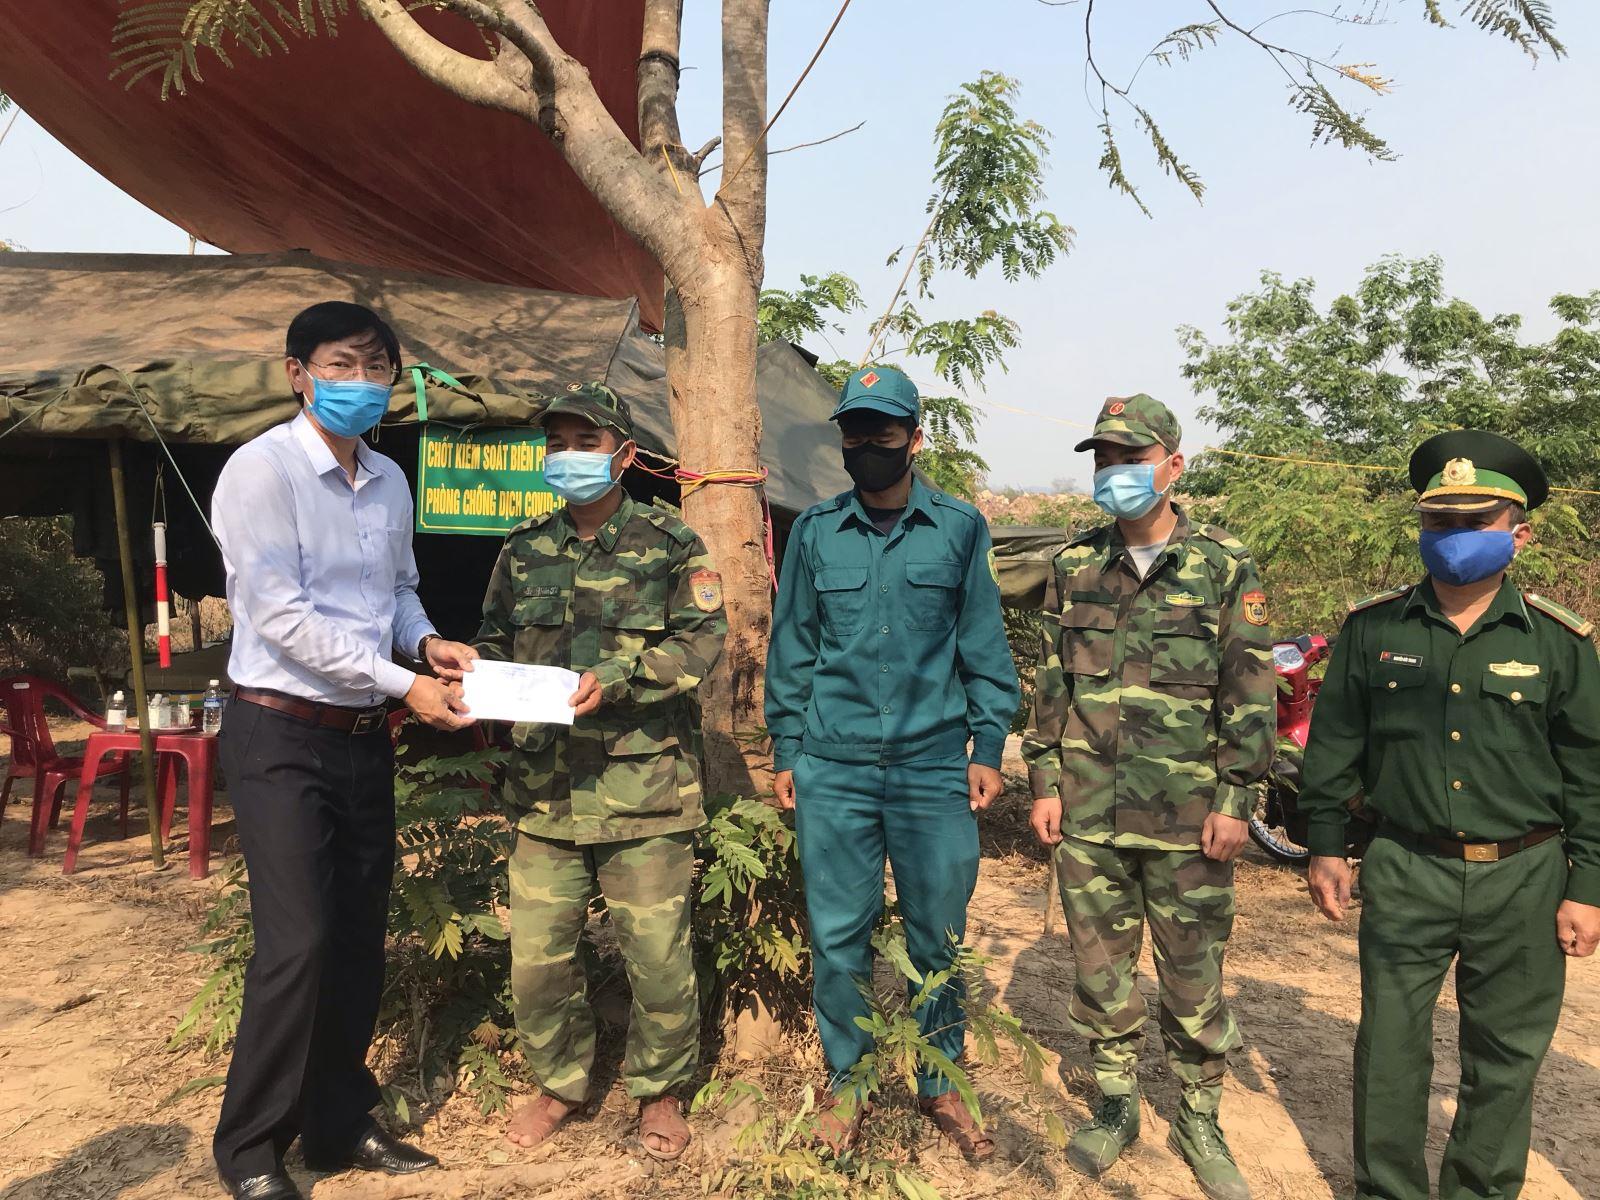 Lãnh đạo huyện Hướng Hóa thăm tặng quà cho cán bộ, chiến sĩ Biên phòng đang làm nhiệm vụ phòng, chống Covid-19 tại các chốt  kiểm soát trên tuyến biên giới Việt - Lào